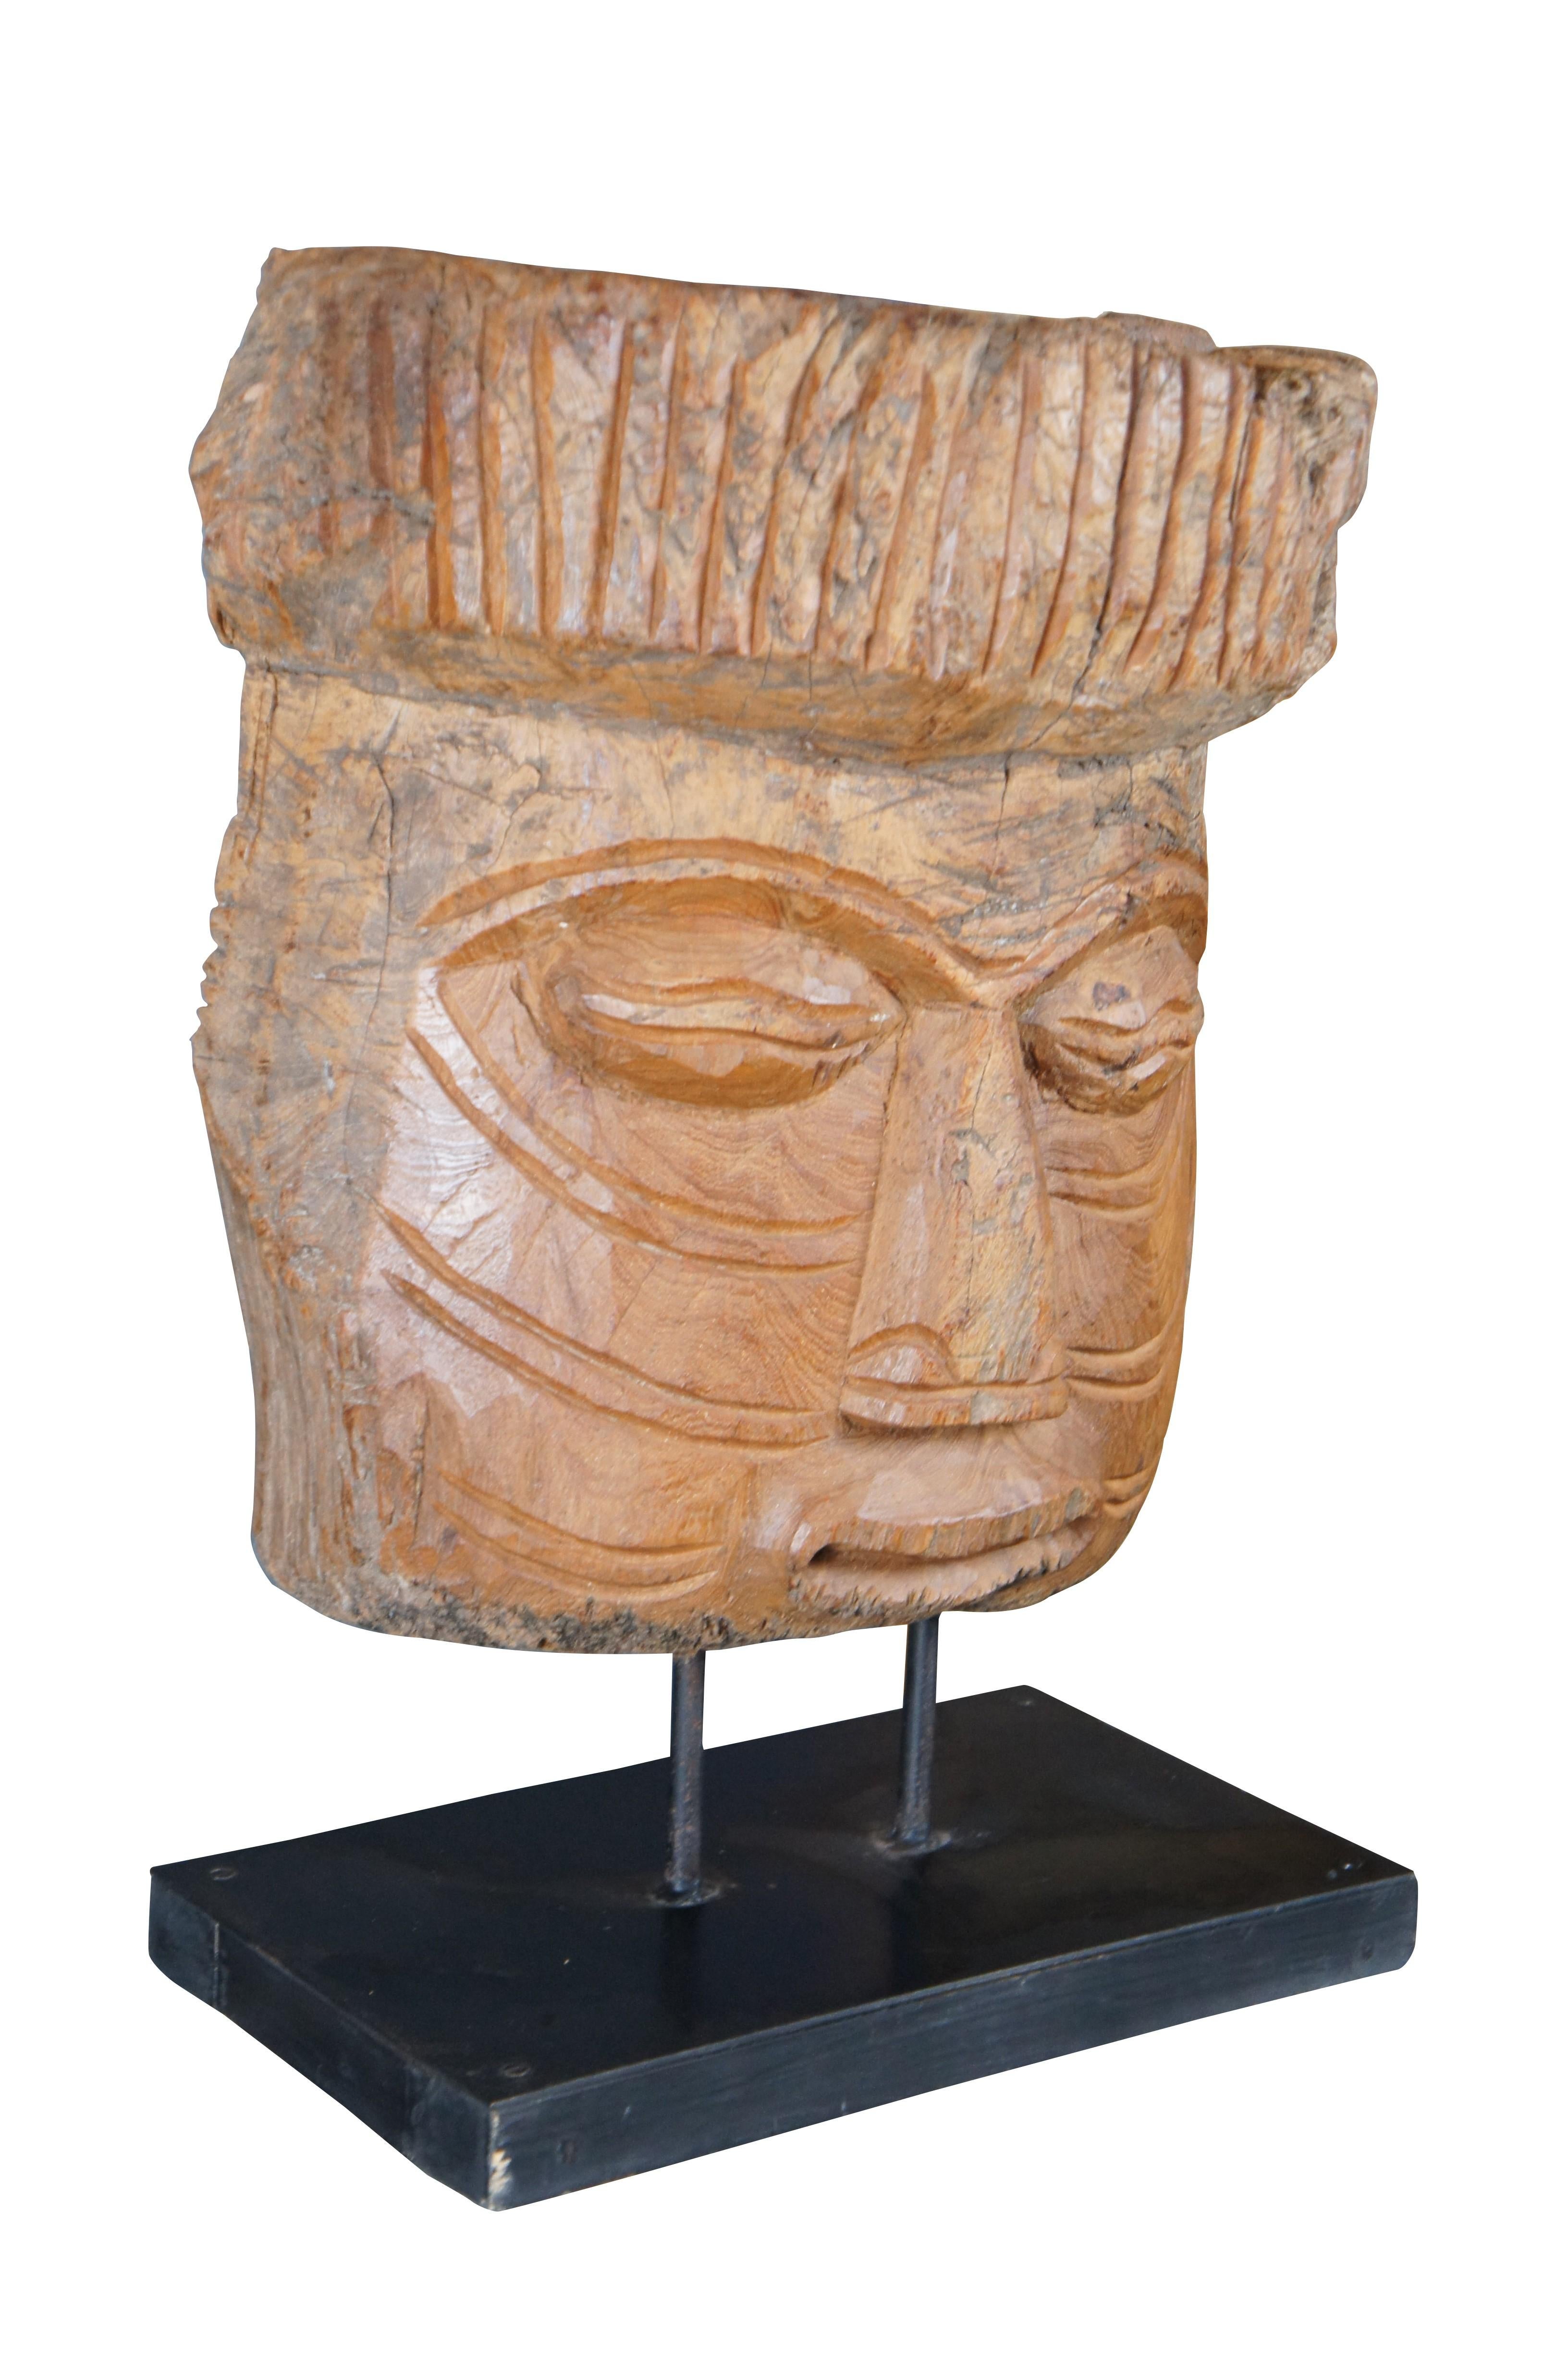 Stammesmaske im mesoamerikanischen Stil des späten 20. Jahrhunderts auf schwarz lackiertem Holzständer. Die Maske ist aus einem Teil eines Baumstamms geschnitzt und weist viele Details auf.

Abmessungen:
9,5